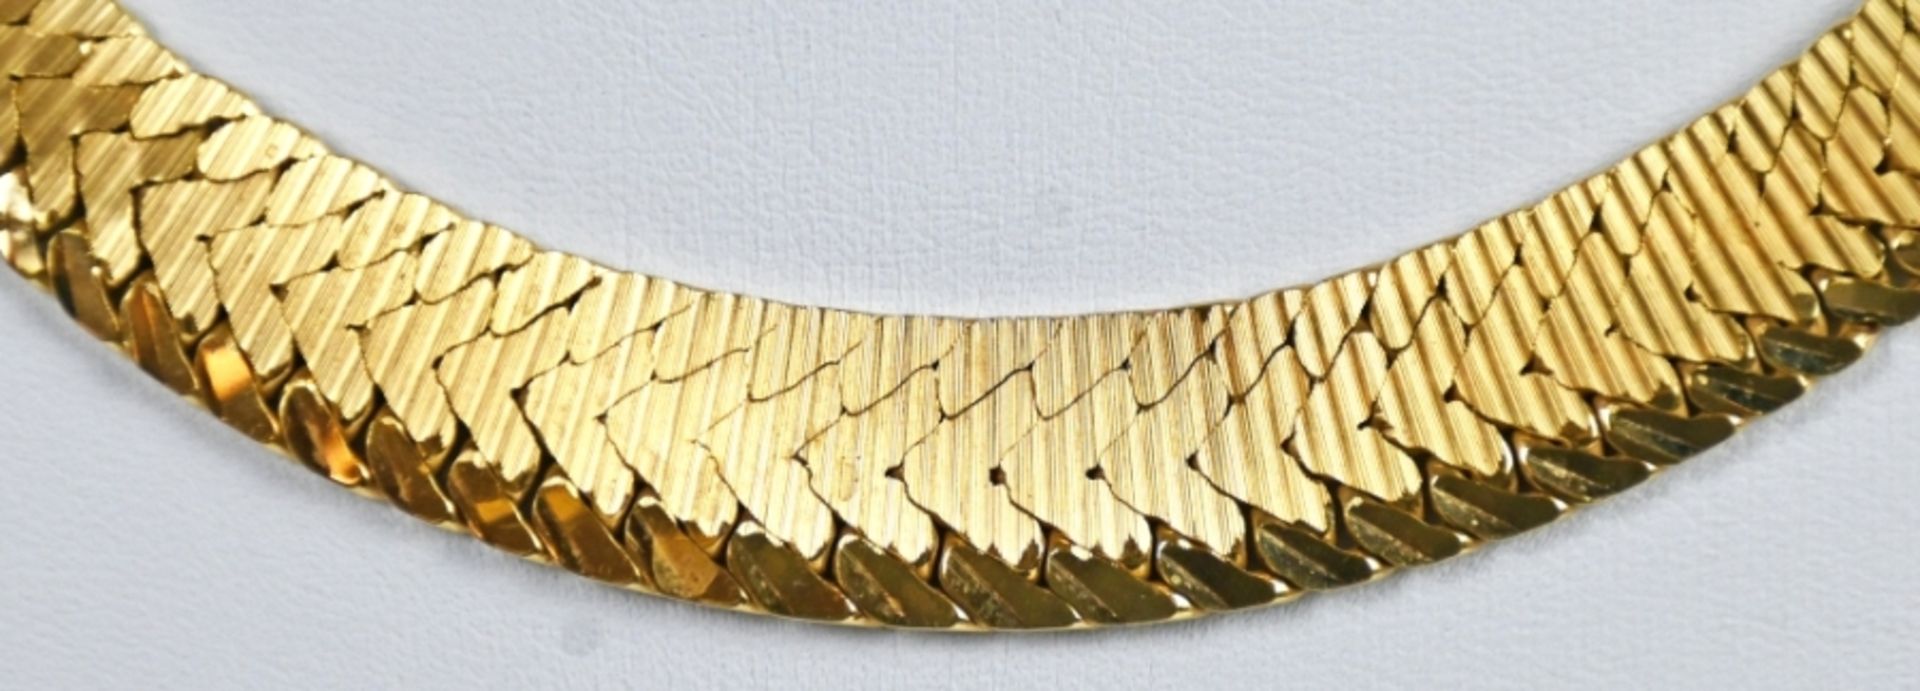 COLLIER flaches, poliertes Band aus kleinen geometrischen Gliedern im Verlauf, Kastenschloss mit Si - Image 3 of 3